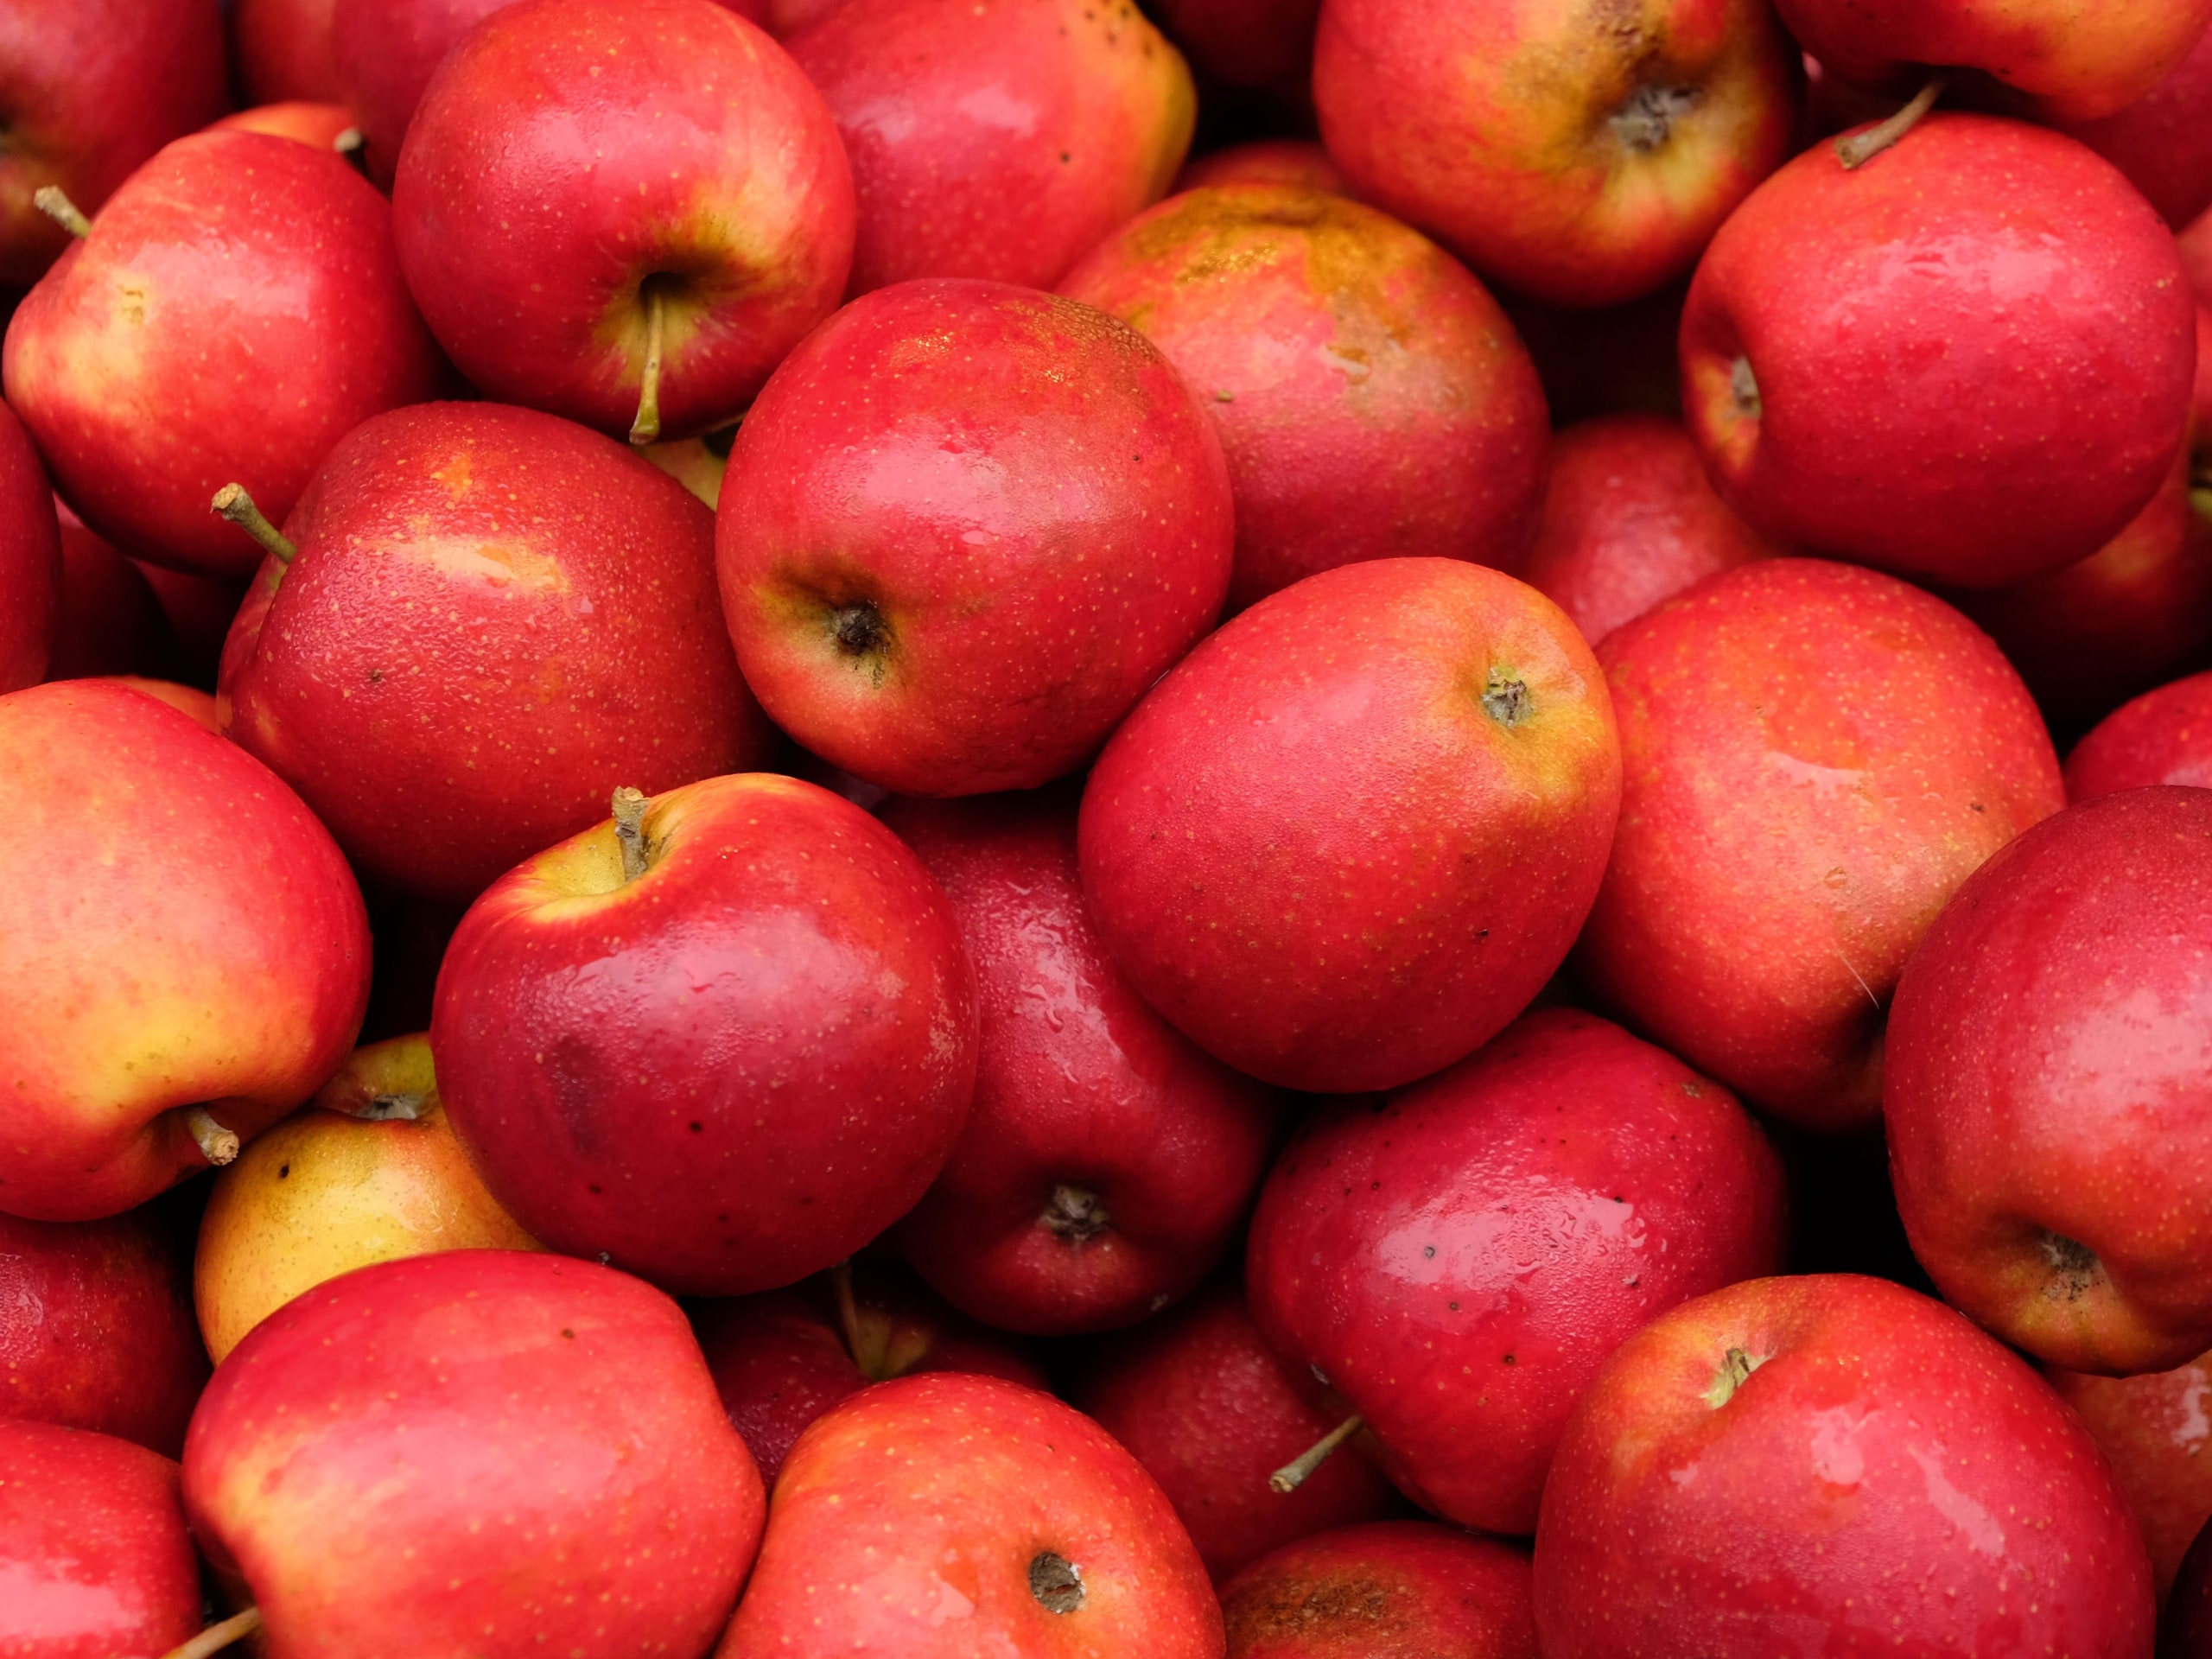 Свежие яблоки купить в СПб - как яблоки купить с доставкой на выгодных условиях